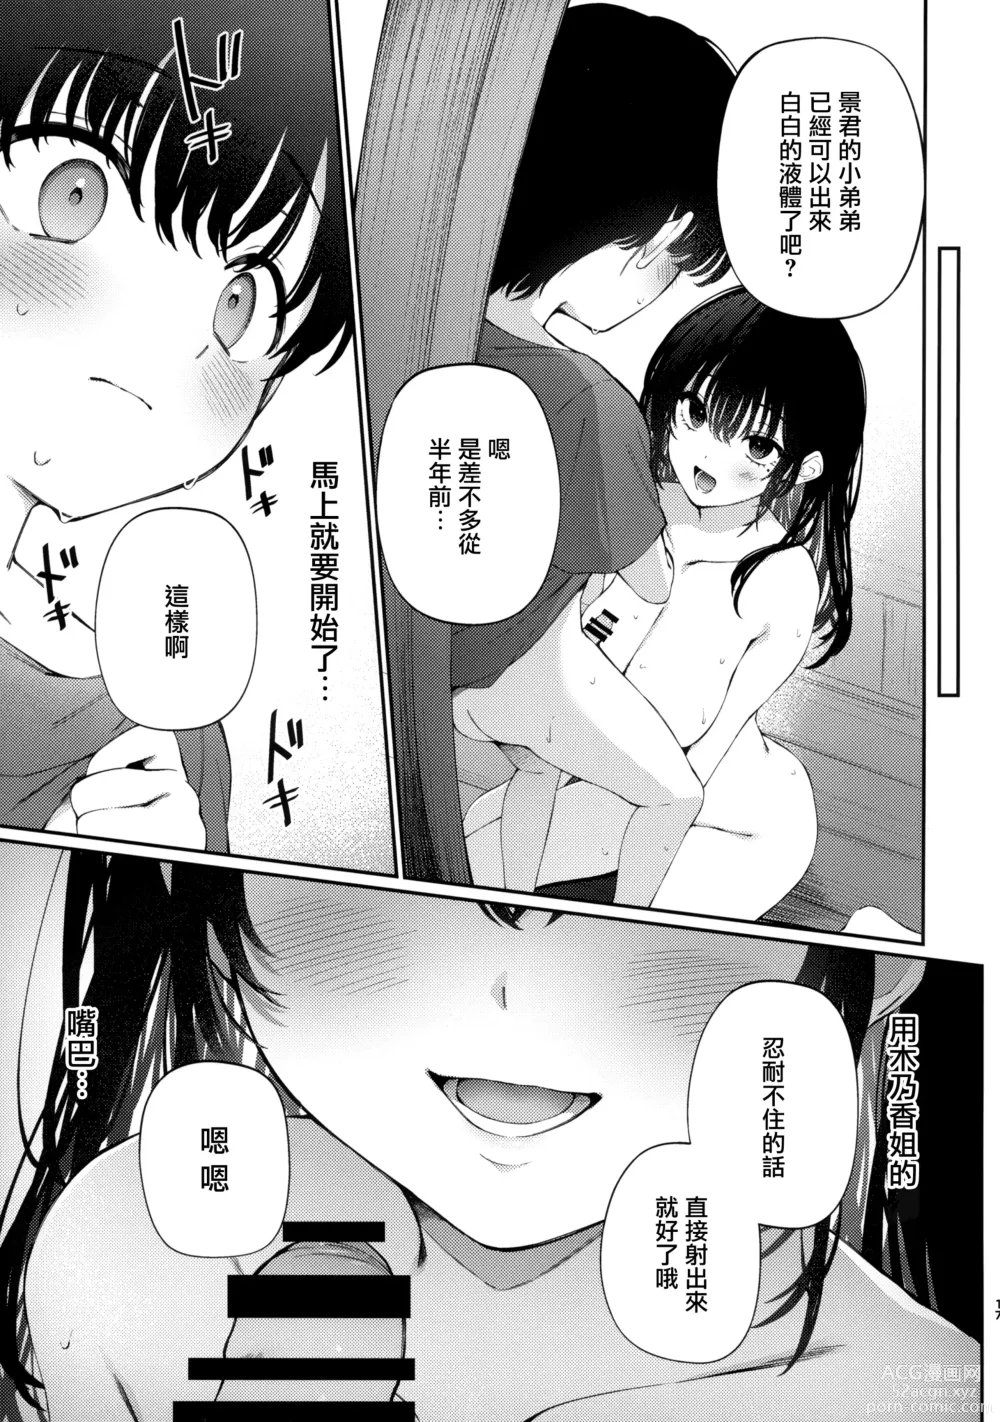 Page 17 of doujinshi Boku no Natsuyasumi no Omoide